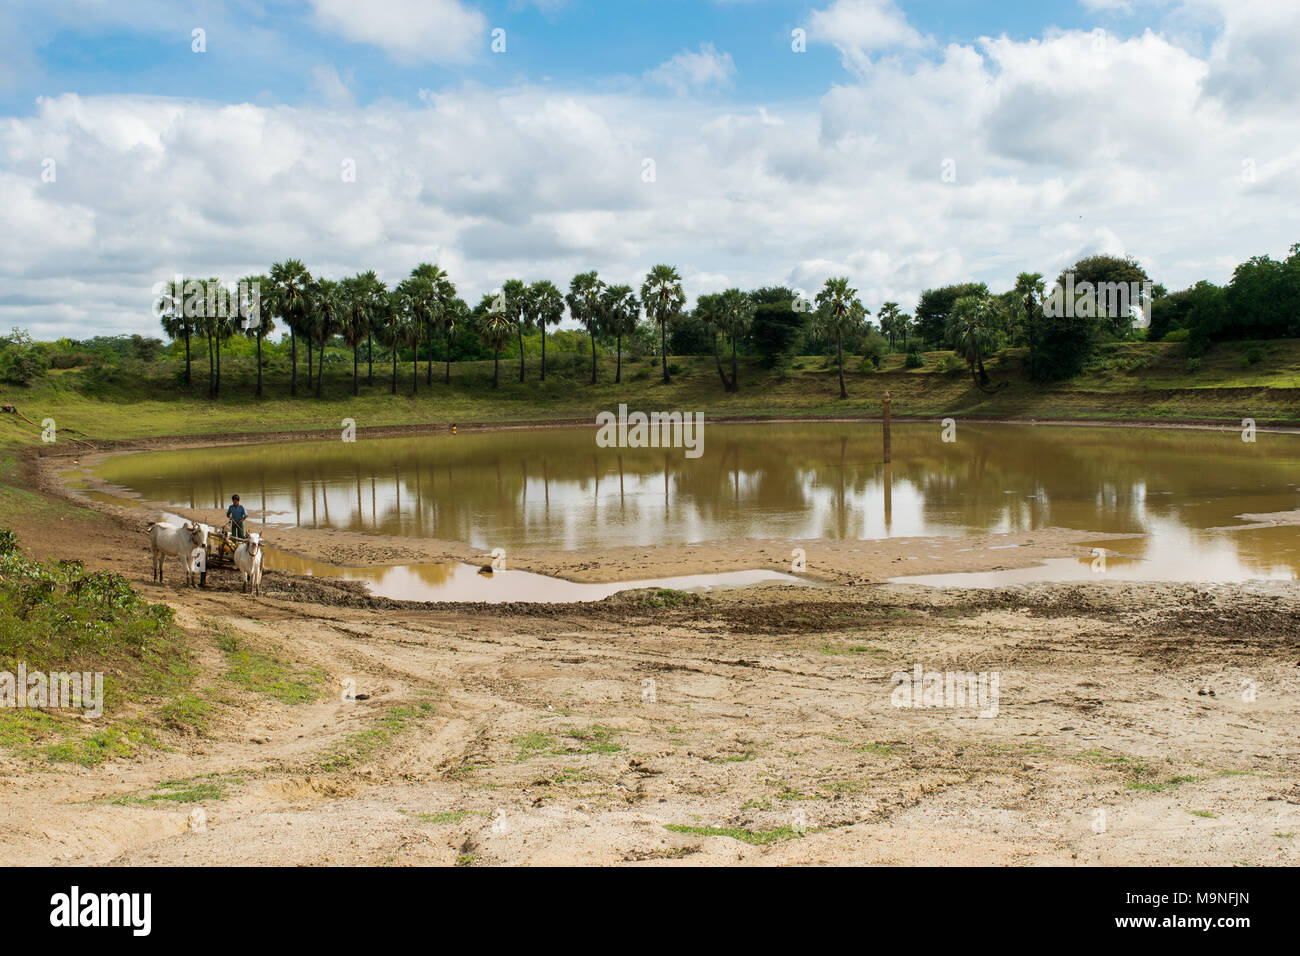 Eine burmesische Mann mit einem Ochsen angetriebenen Wagen, mit zwei weißen Bullen Wasser in ein Faß aus einem Stausee in der Nähe von Bagan, Burma, Myanmar, Se Asien zu sammeln Stockfoto